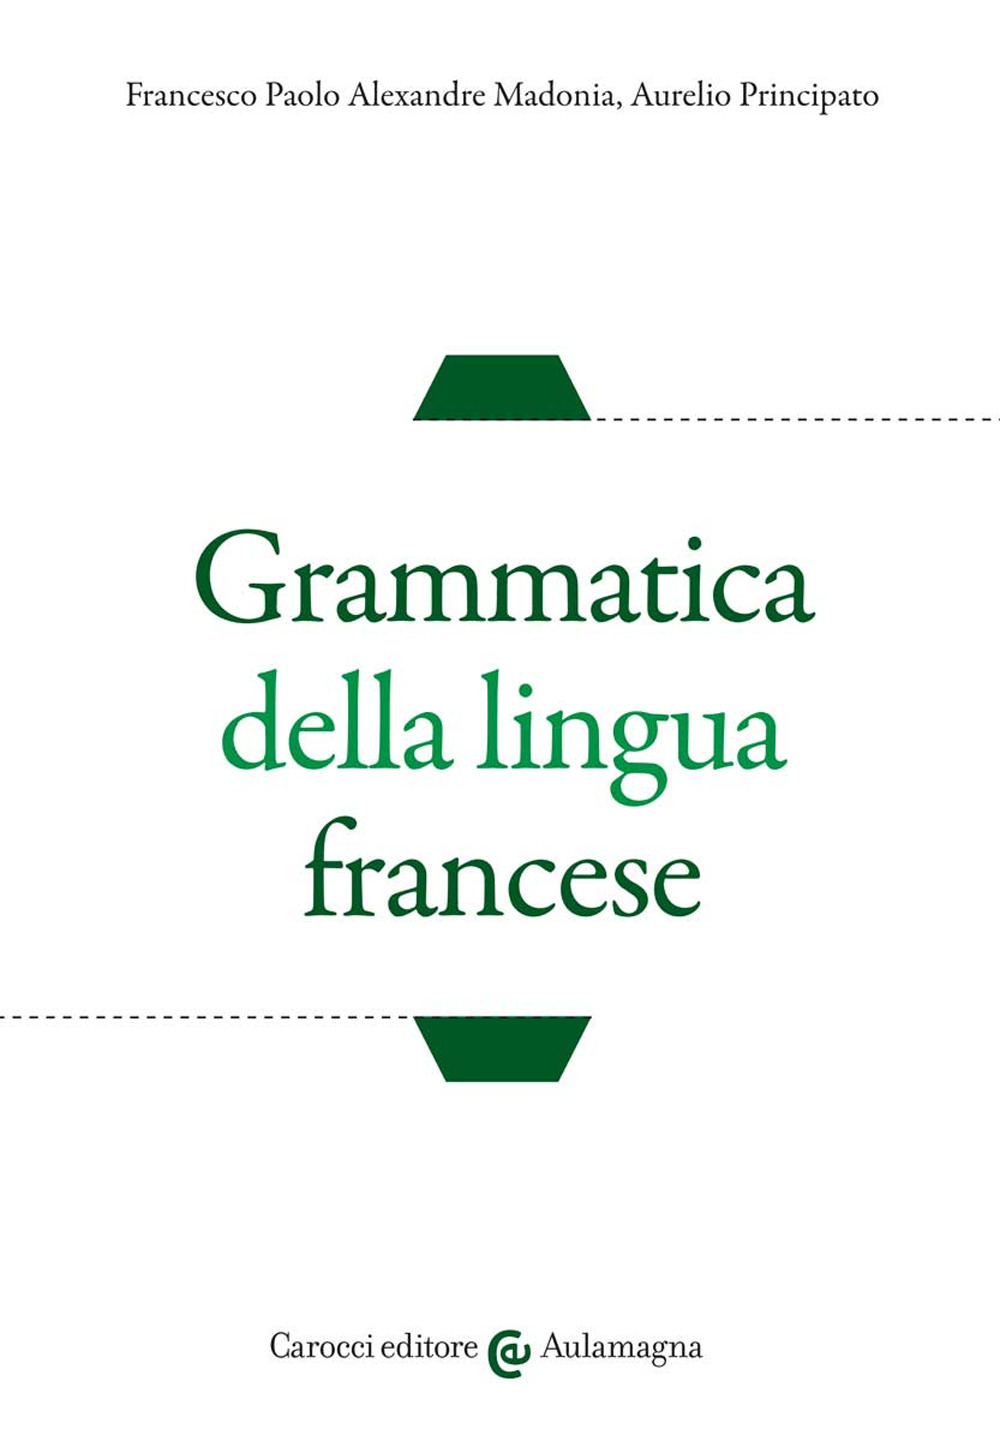 Image of Grammatica della lingua francese